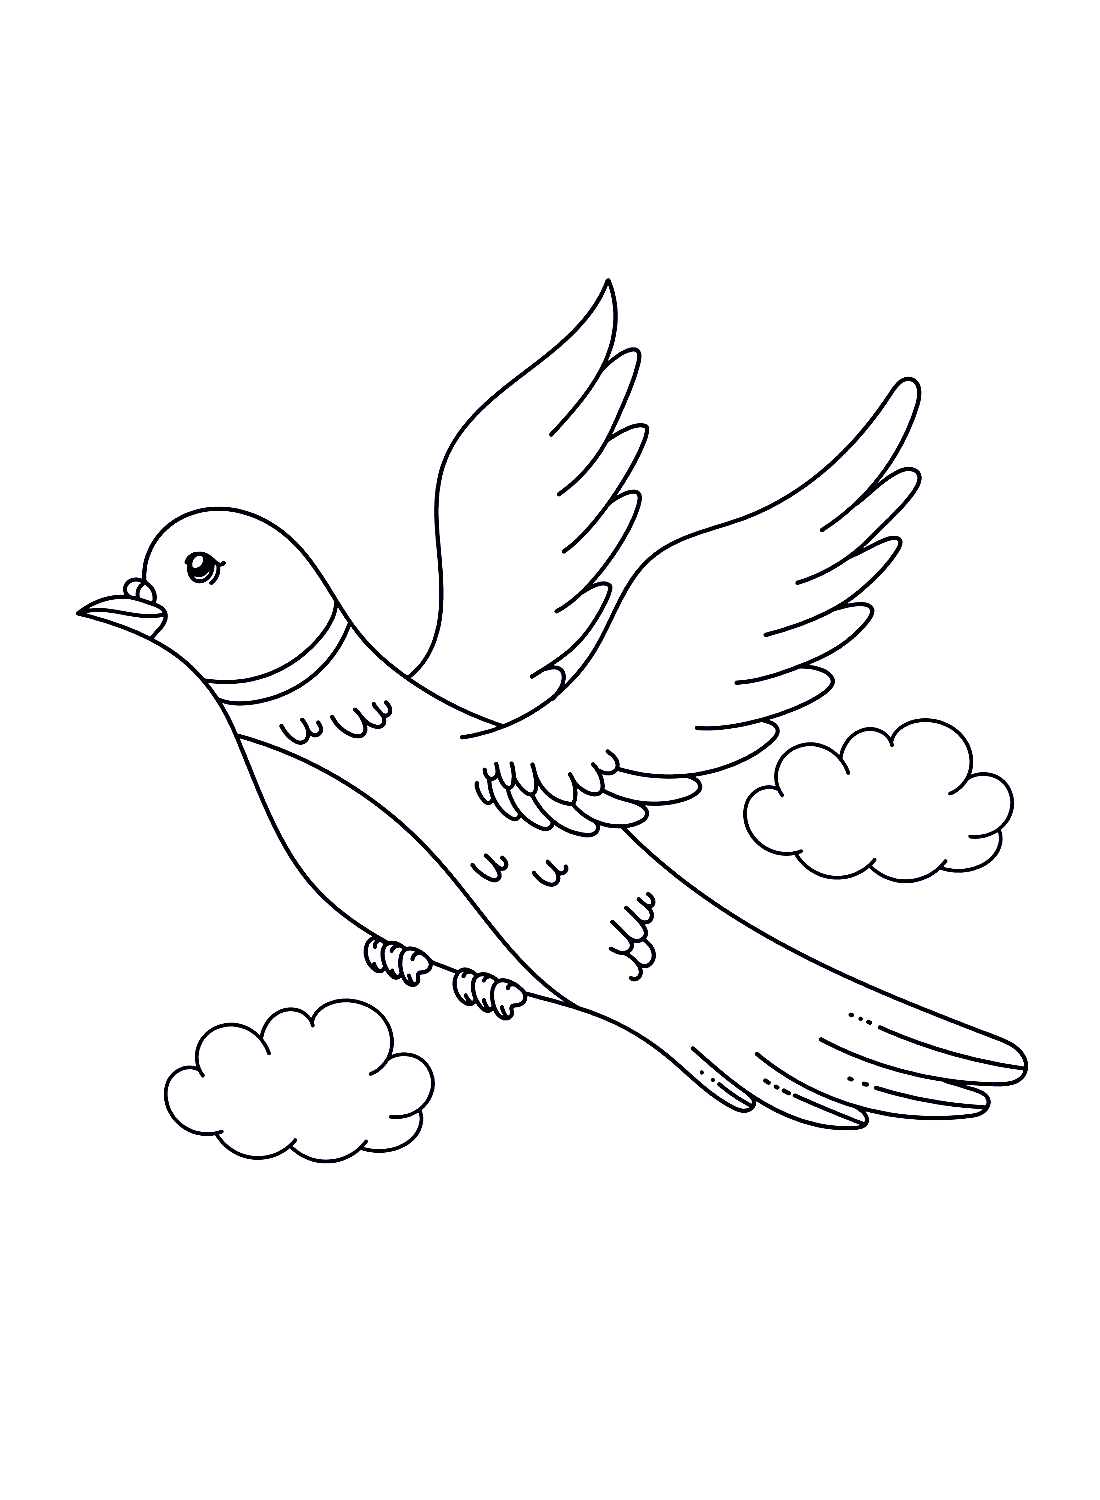 Eine fliegende Taube von Doves